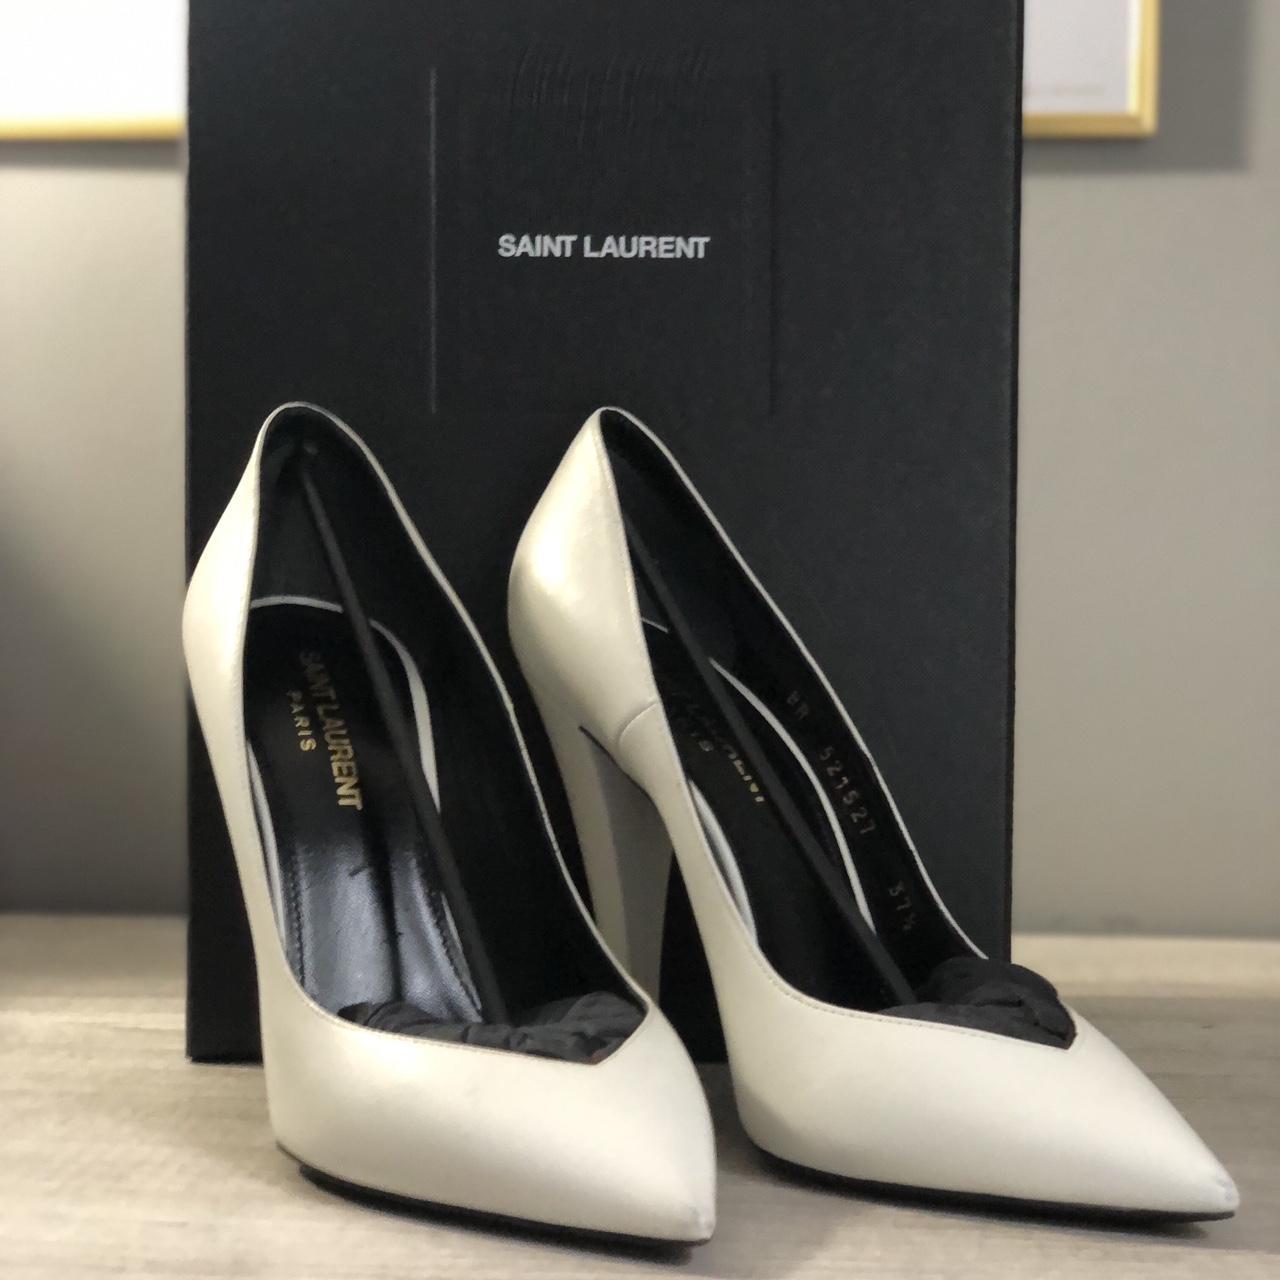 Yves Saint Laurent Women's Heels for sale